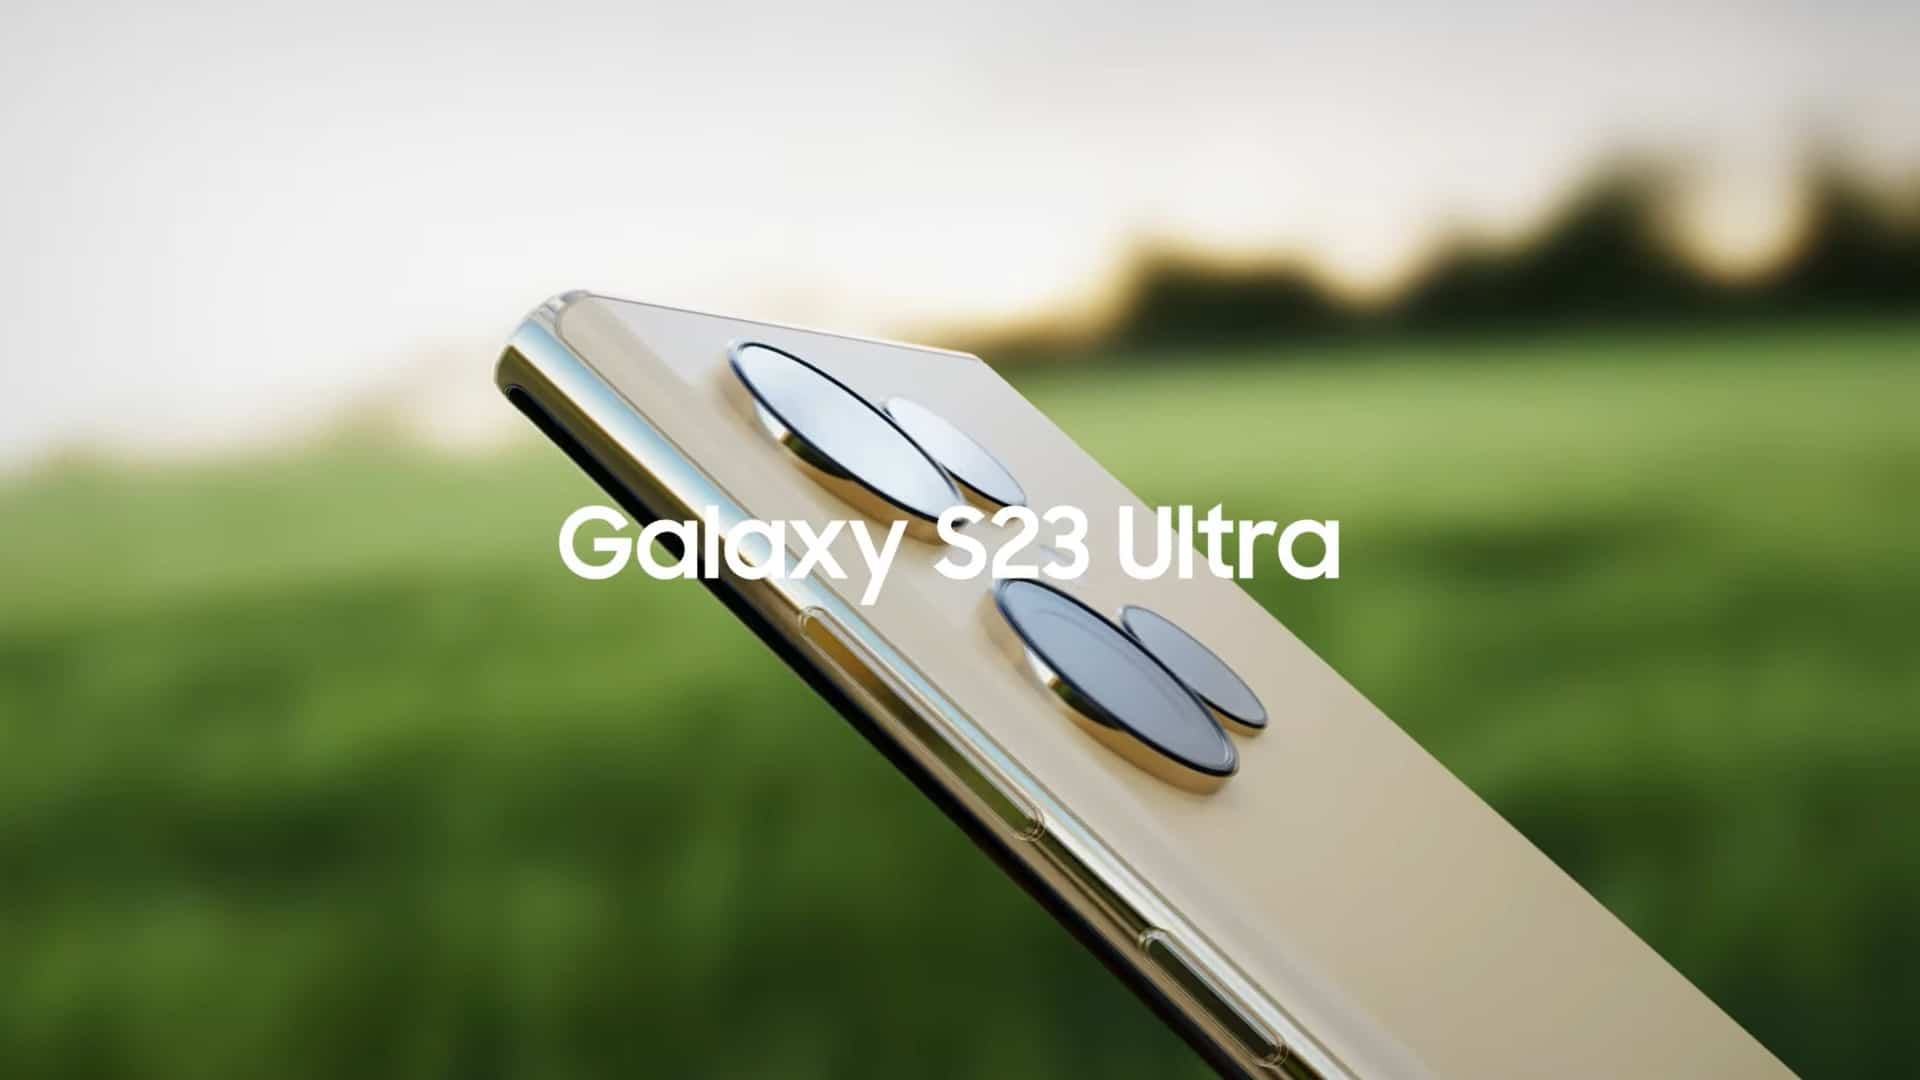 التميز والفخامة يتألقان بهاتف Samsung Galaxy S23 Ultra المرتقب مع كاميرا جبار